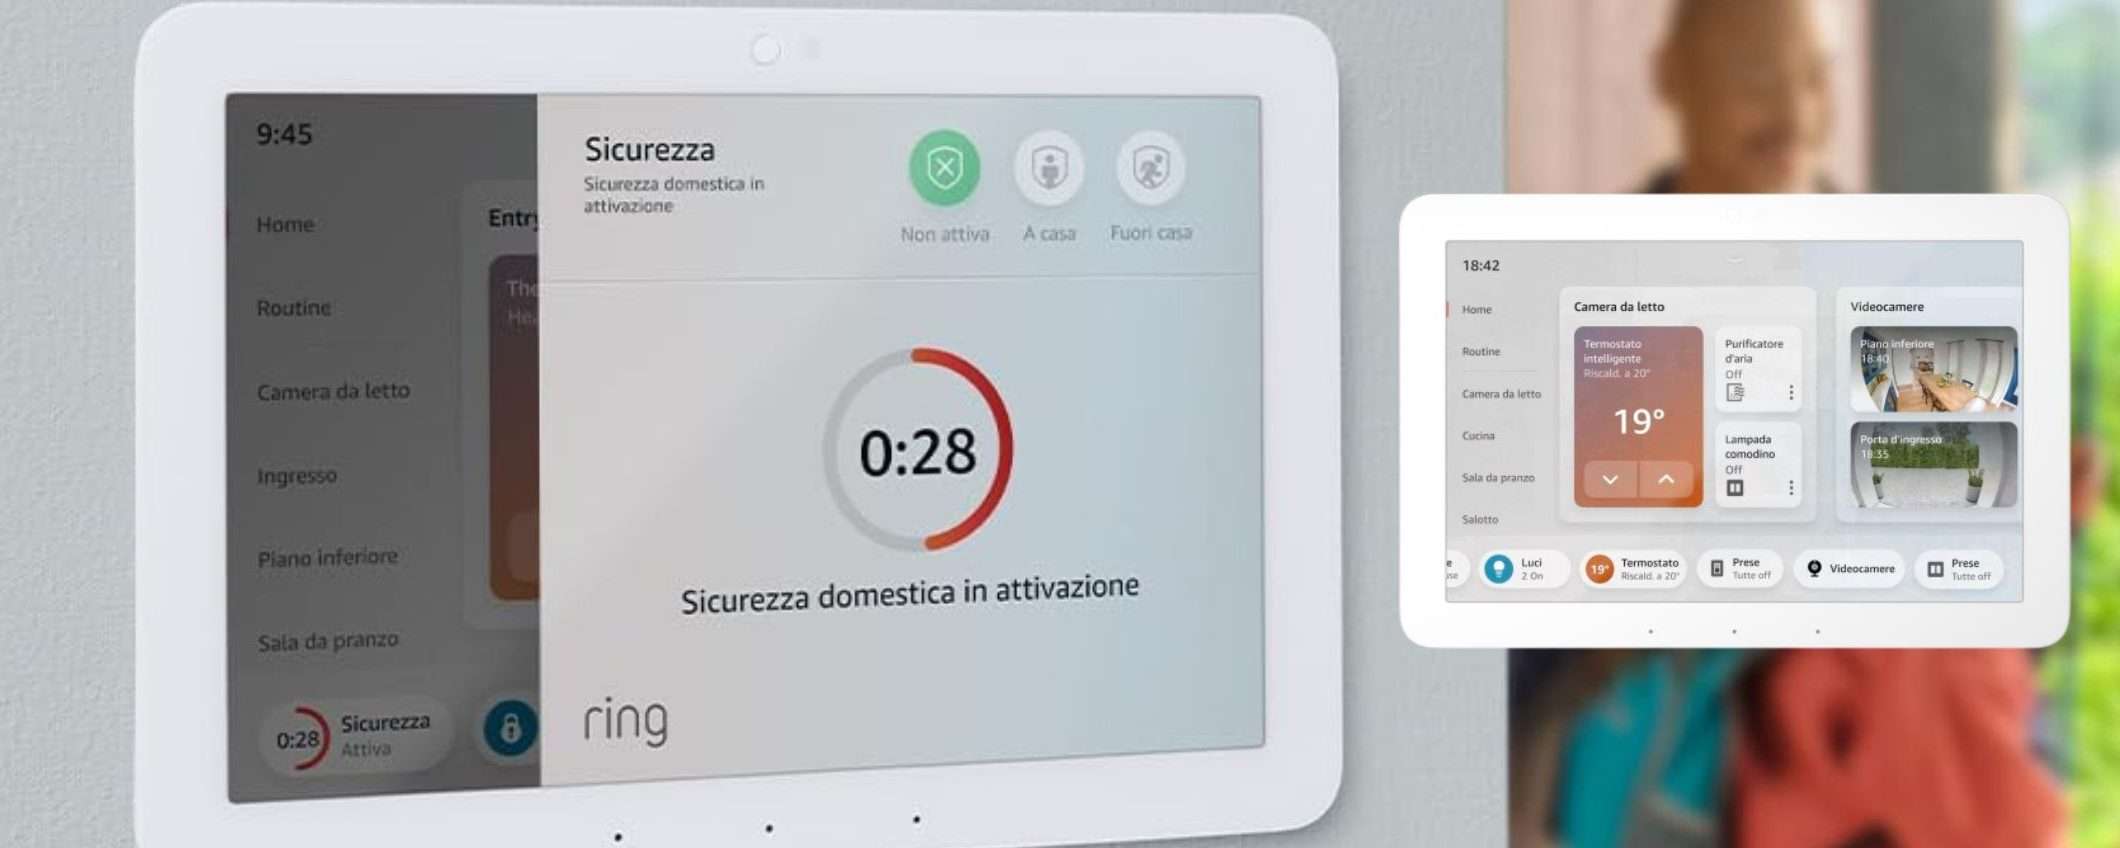 Amazon Echo Hub in Italia: la casa del futuro ha un prezzo super accessibile